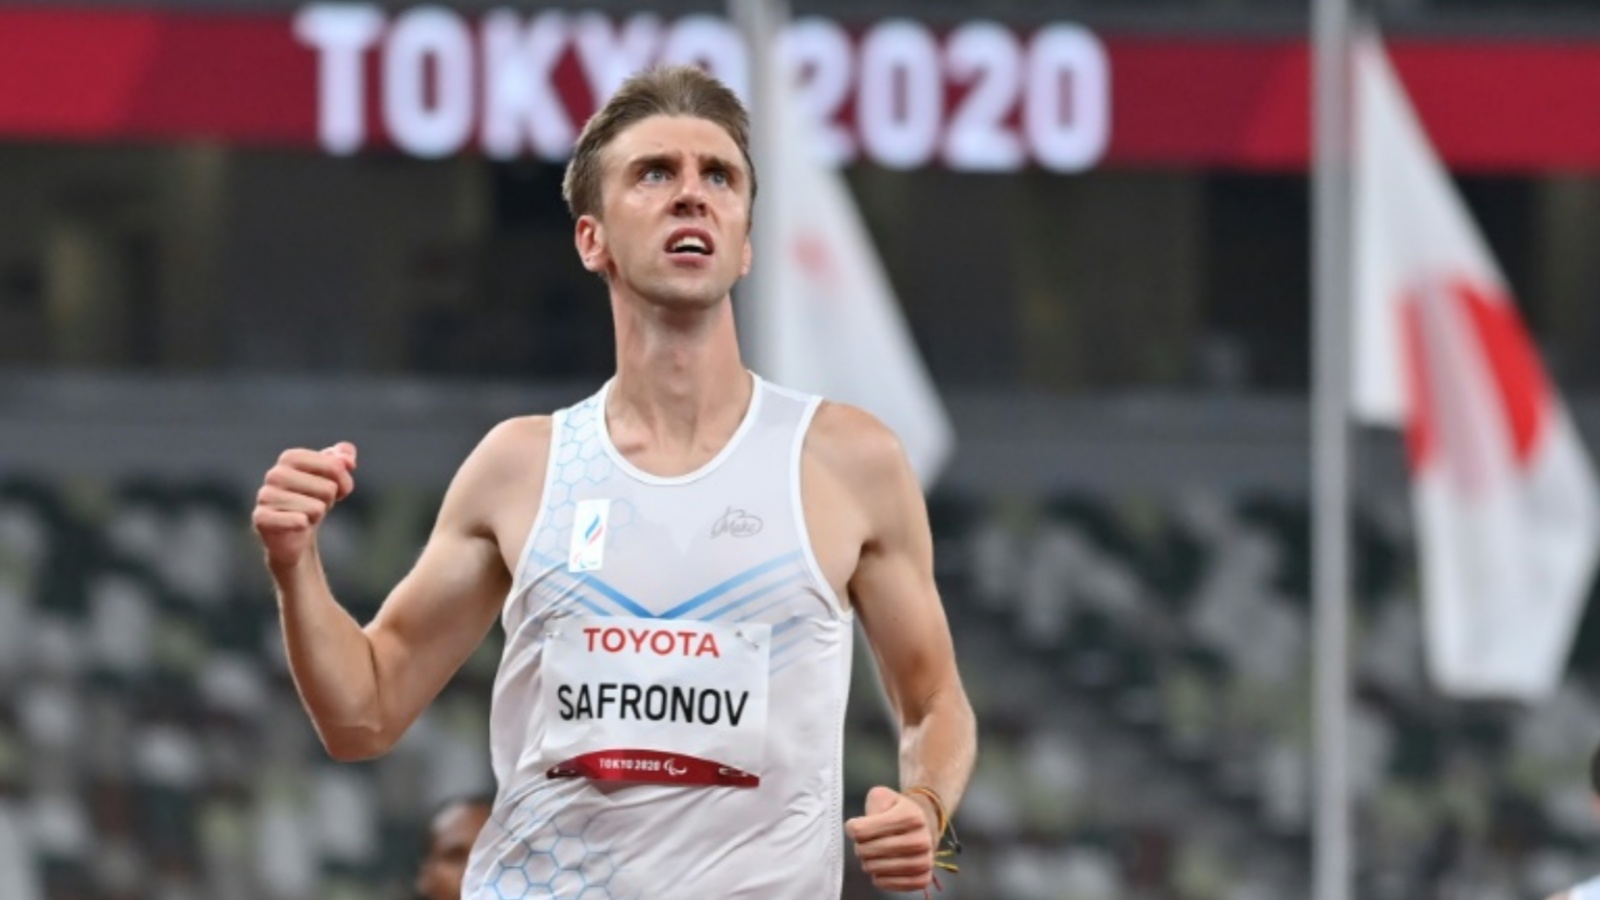 العداء الروسي دميتري سافرونوف خلال مشاركته في سباق 100 م في دورة الالعاب البارالمبية في طوكيو في 30 أغسطس 2021.